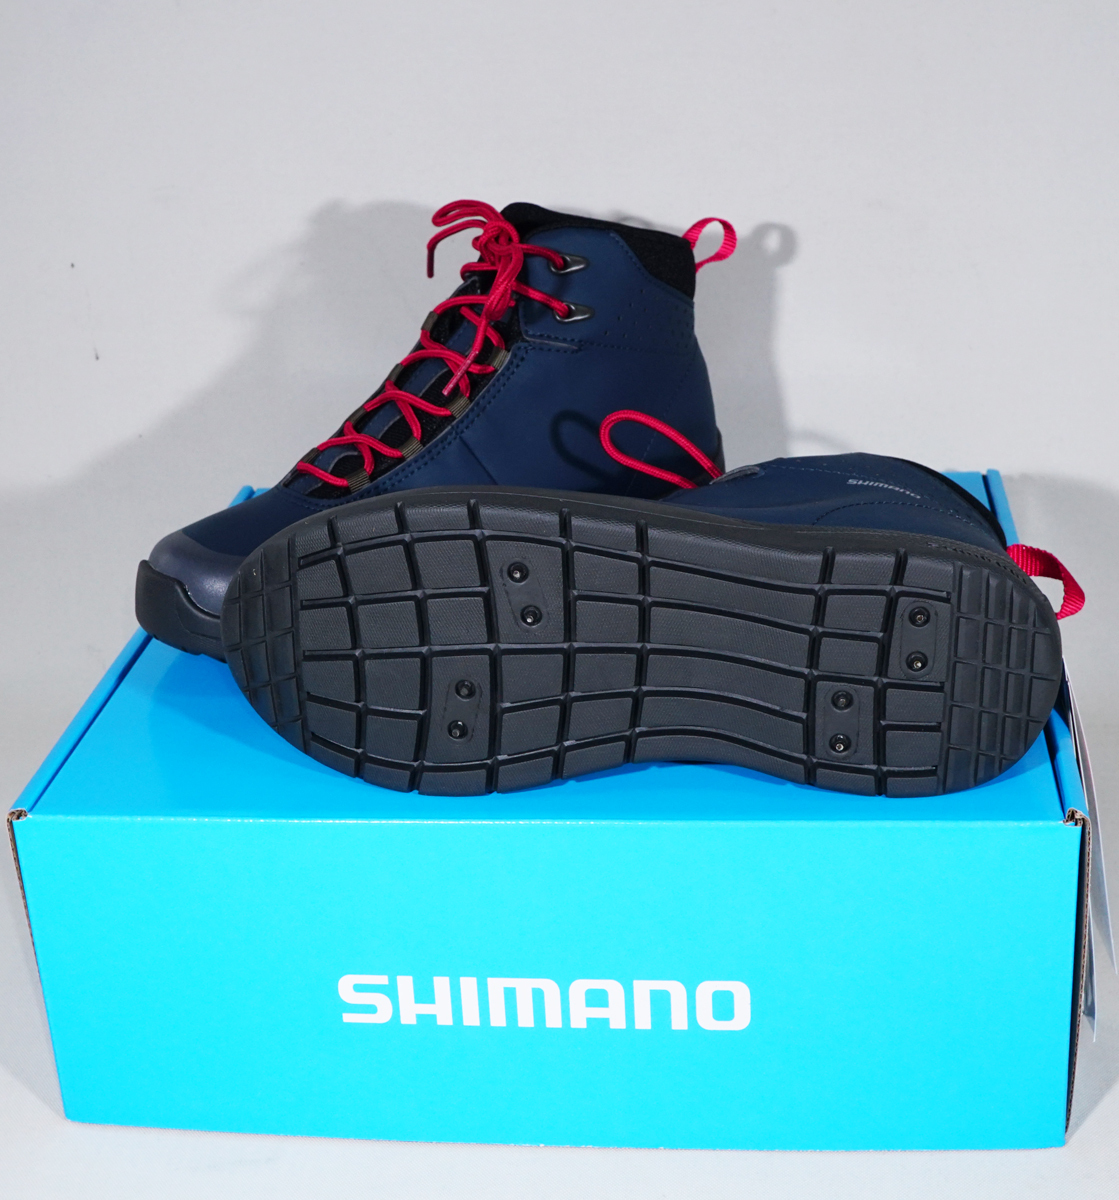  simano  FS-060Q  темно-синий  черный  27.5cm  сухой  экран   *   радиальный   спа ... обувь  (... тип )